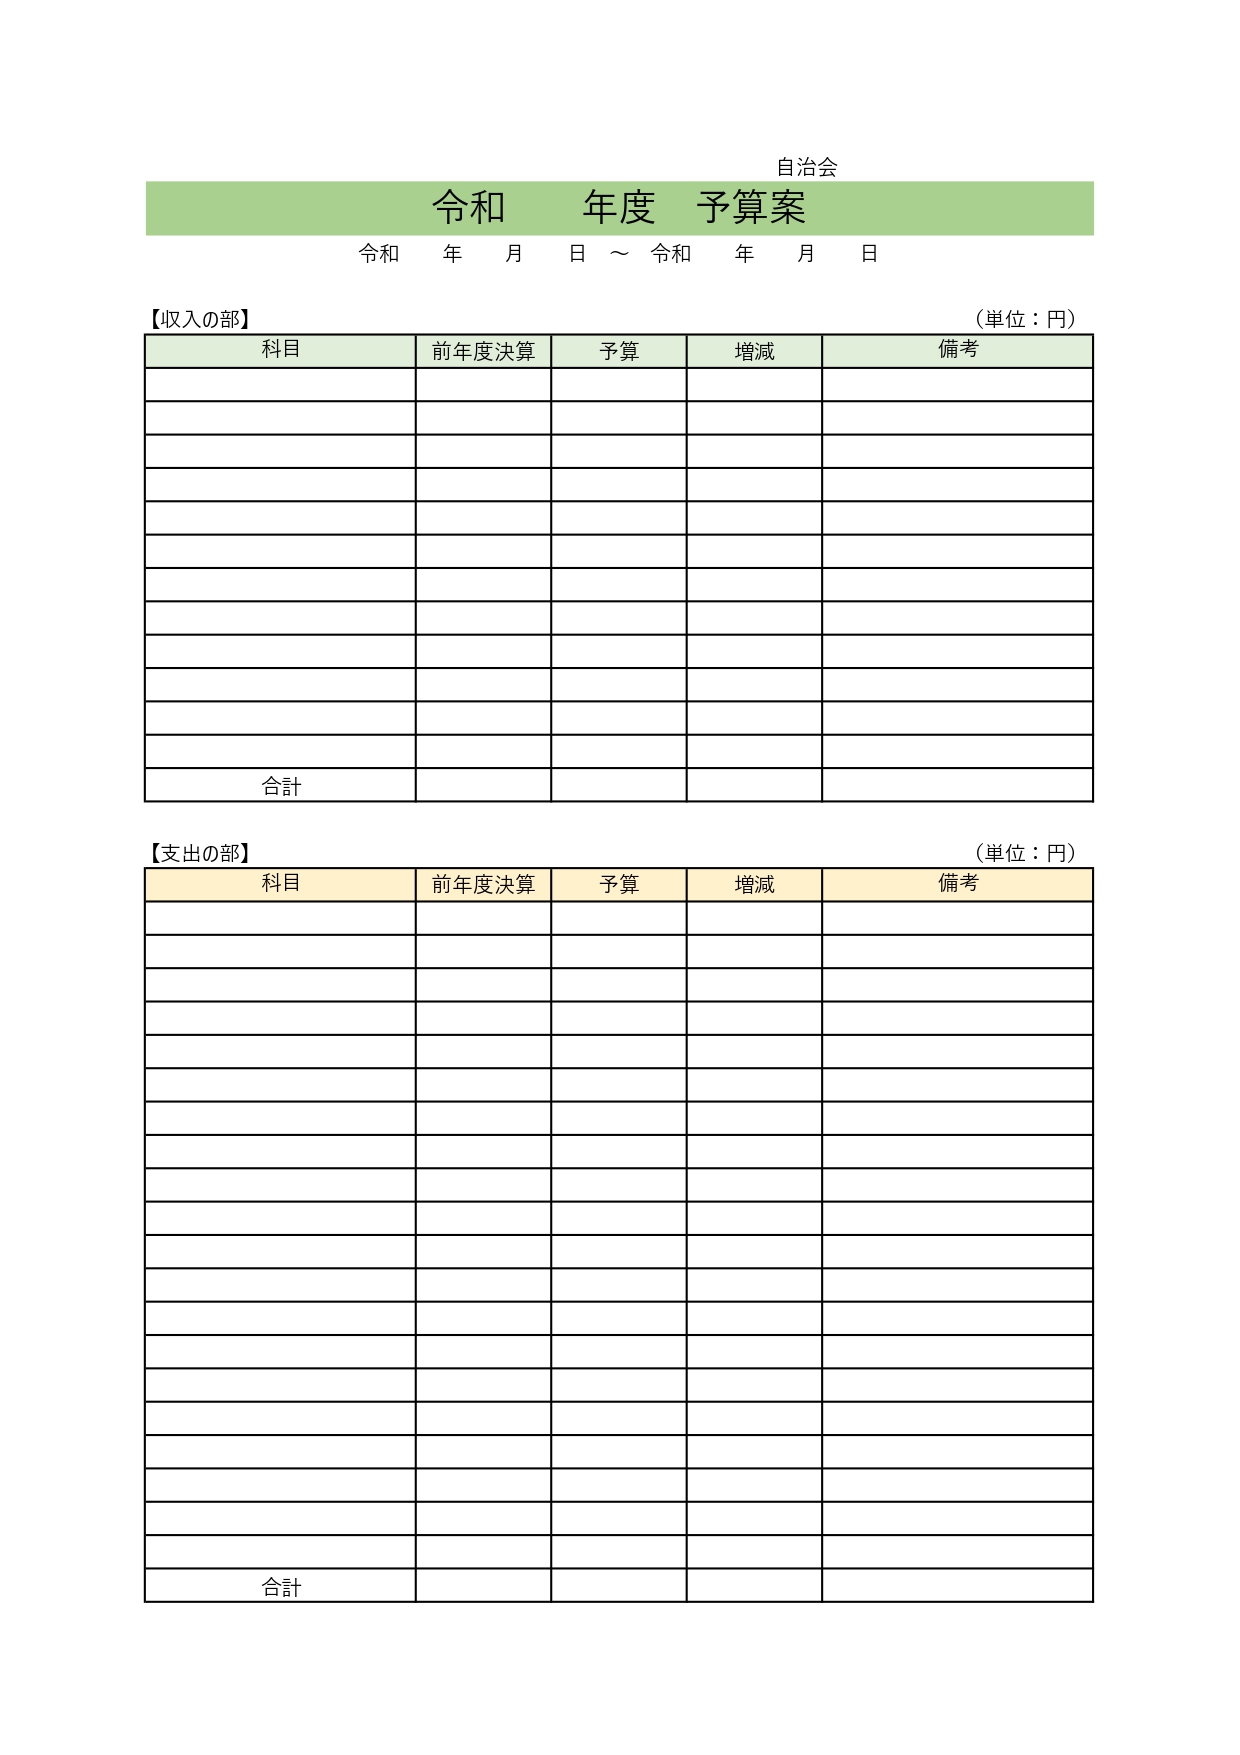 子供会・町内会・自治会で使える予算案「Excel・Word」シンプルで作り方が簡単な無料テンプレートをダウンロード